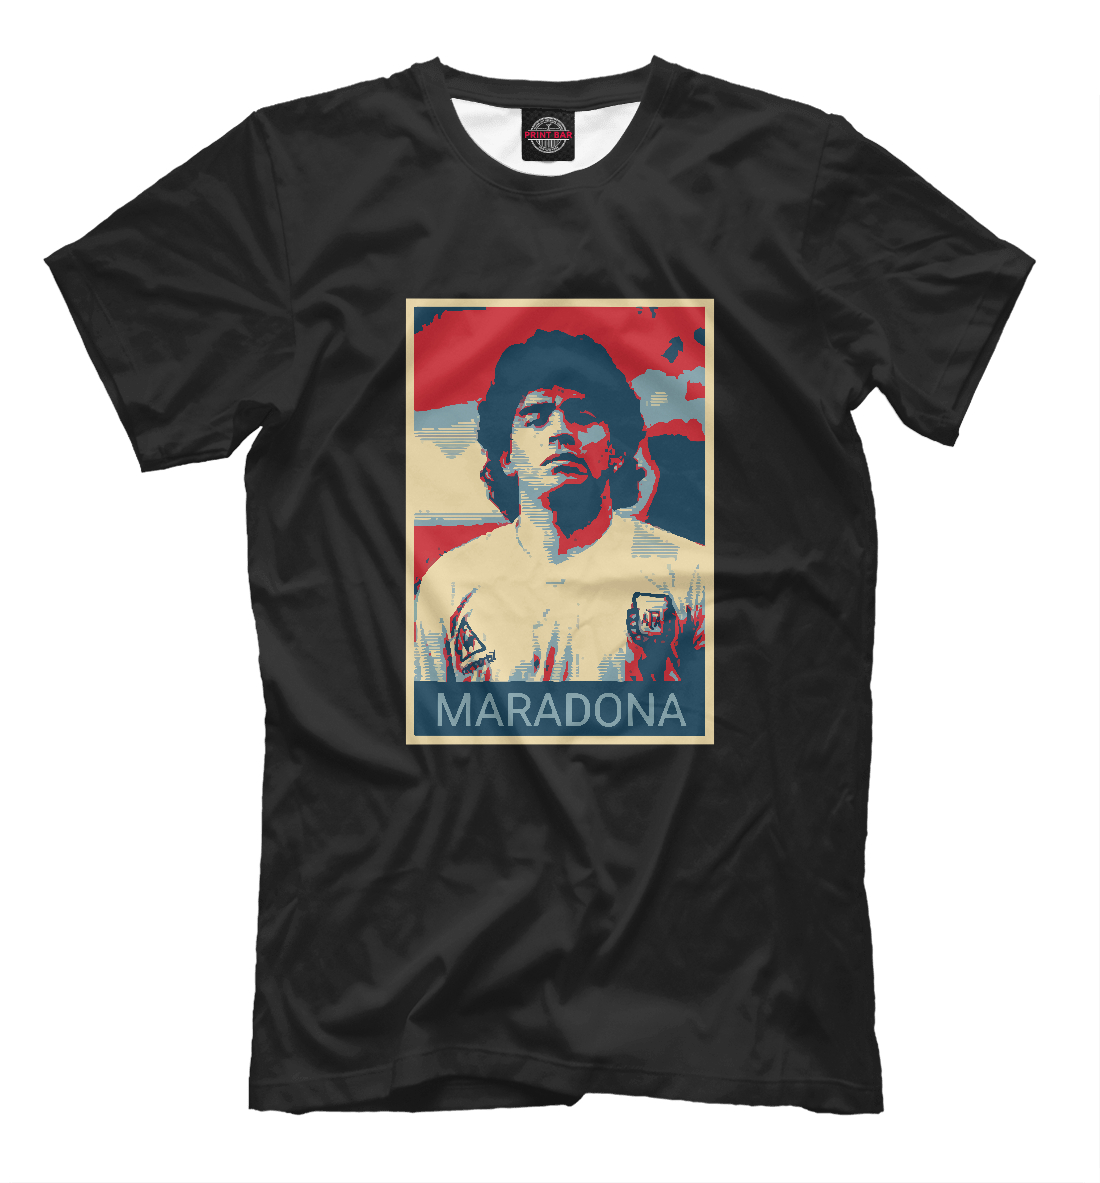 Детская Футболка Maradona для мальчиков, артикул FLT-836145-fut-2mp